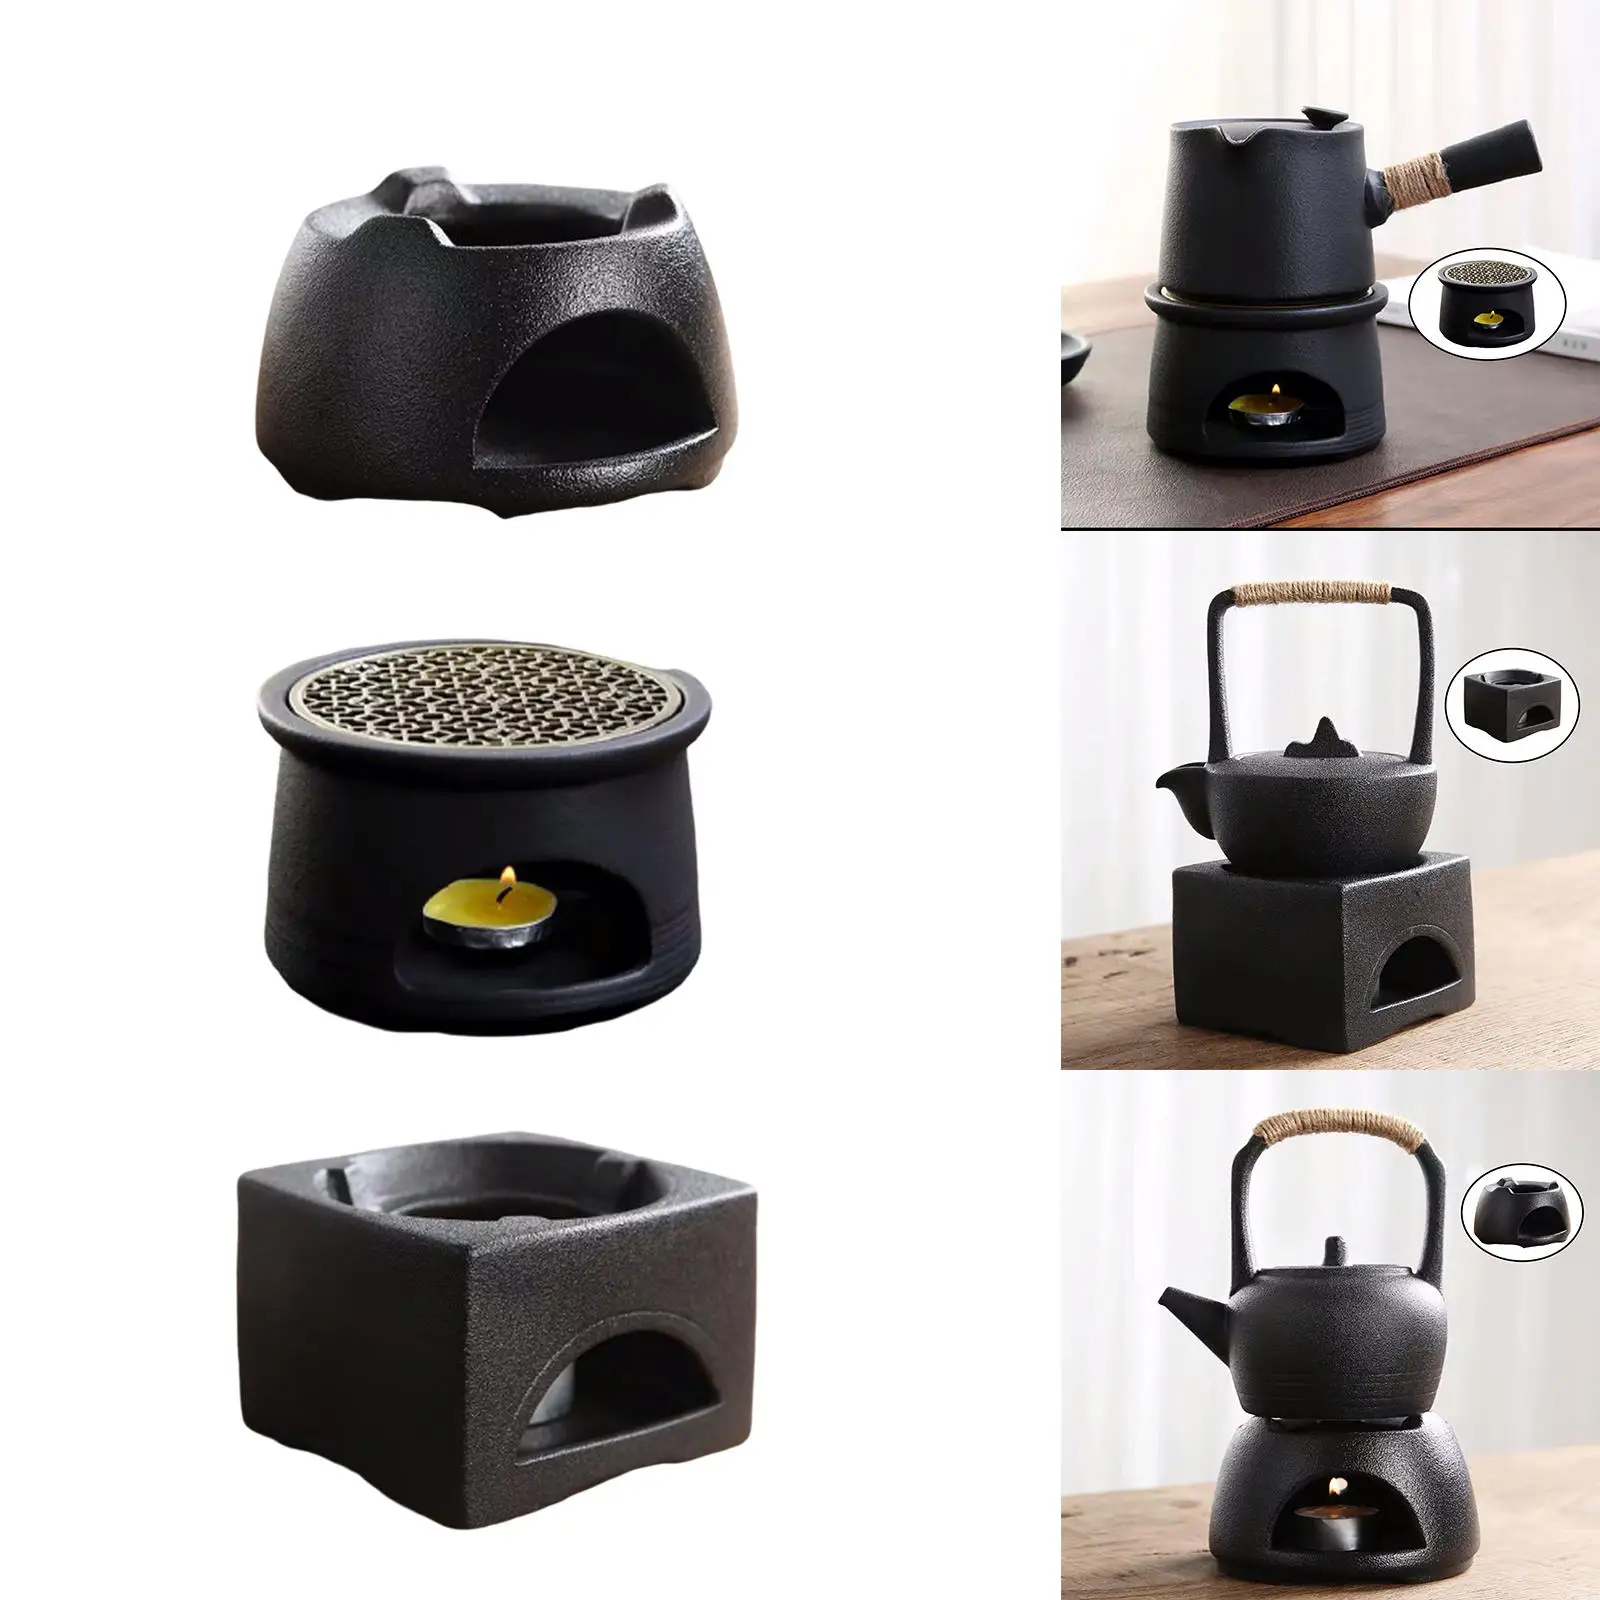 

Теплая керамическая прочная термостойкая чайная плита в японском стиле кунг-фу для взрослых